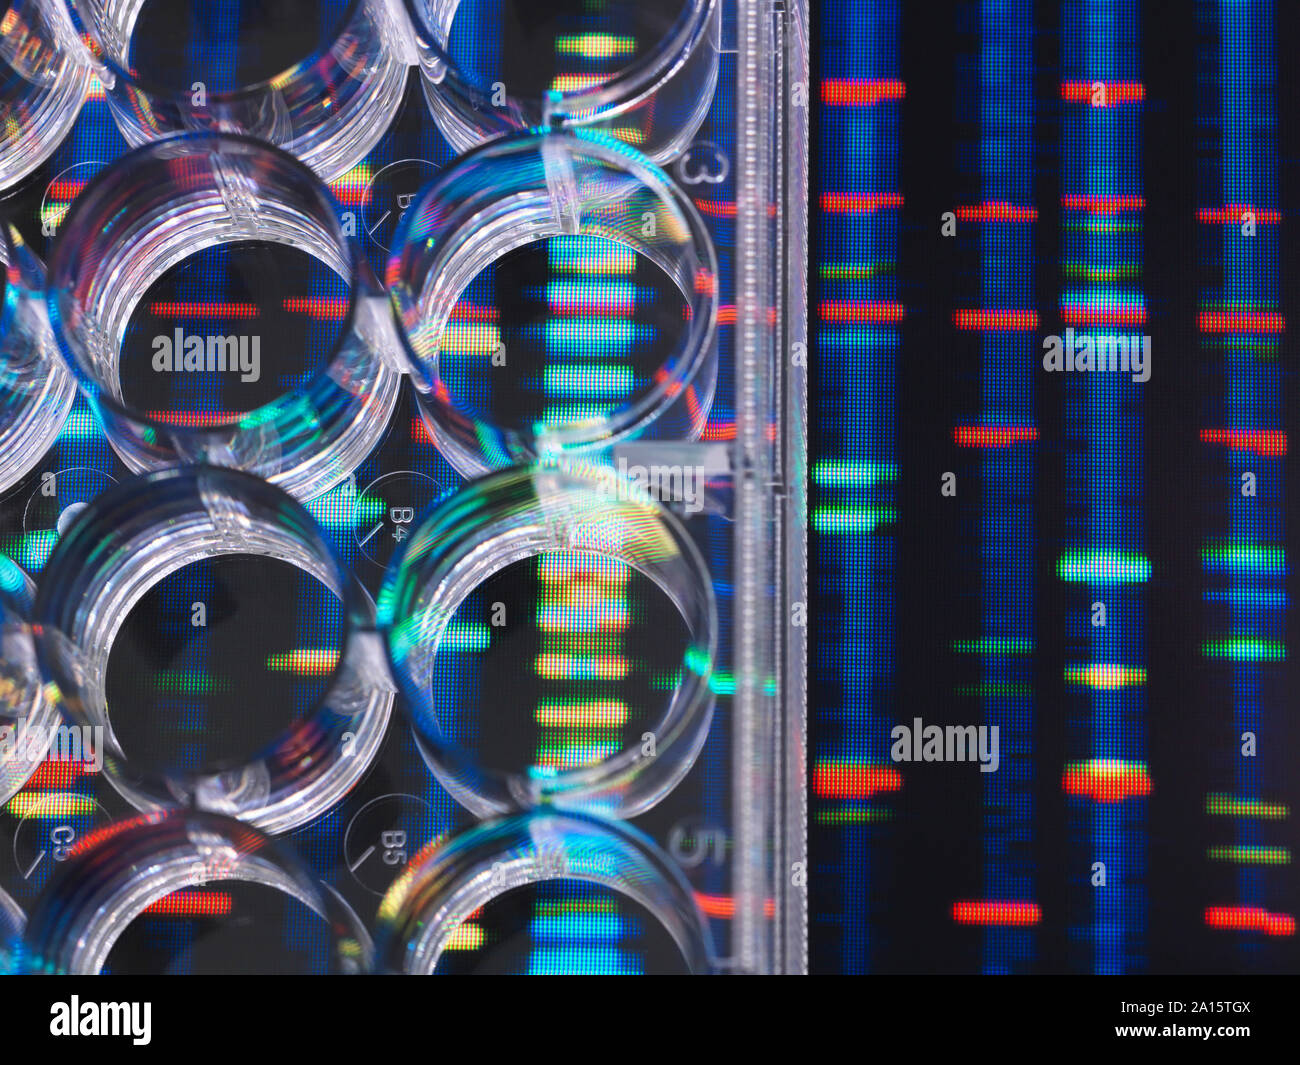 La investigación sobre el ADN, las muestras de ADN en una placa de pocillos múltiples preparadas para el análisis con resultados de ADN en el fondo Foto de stock